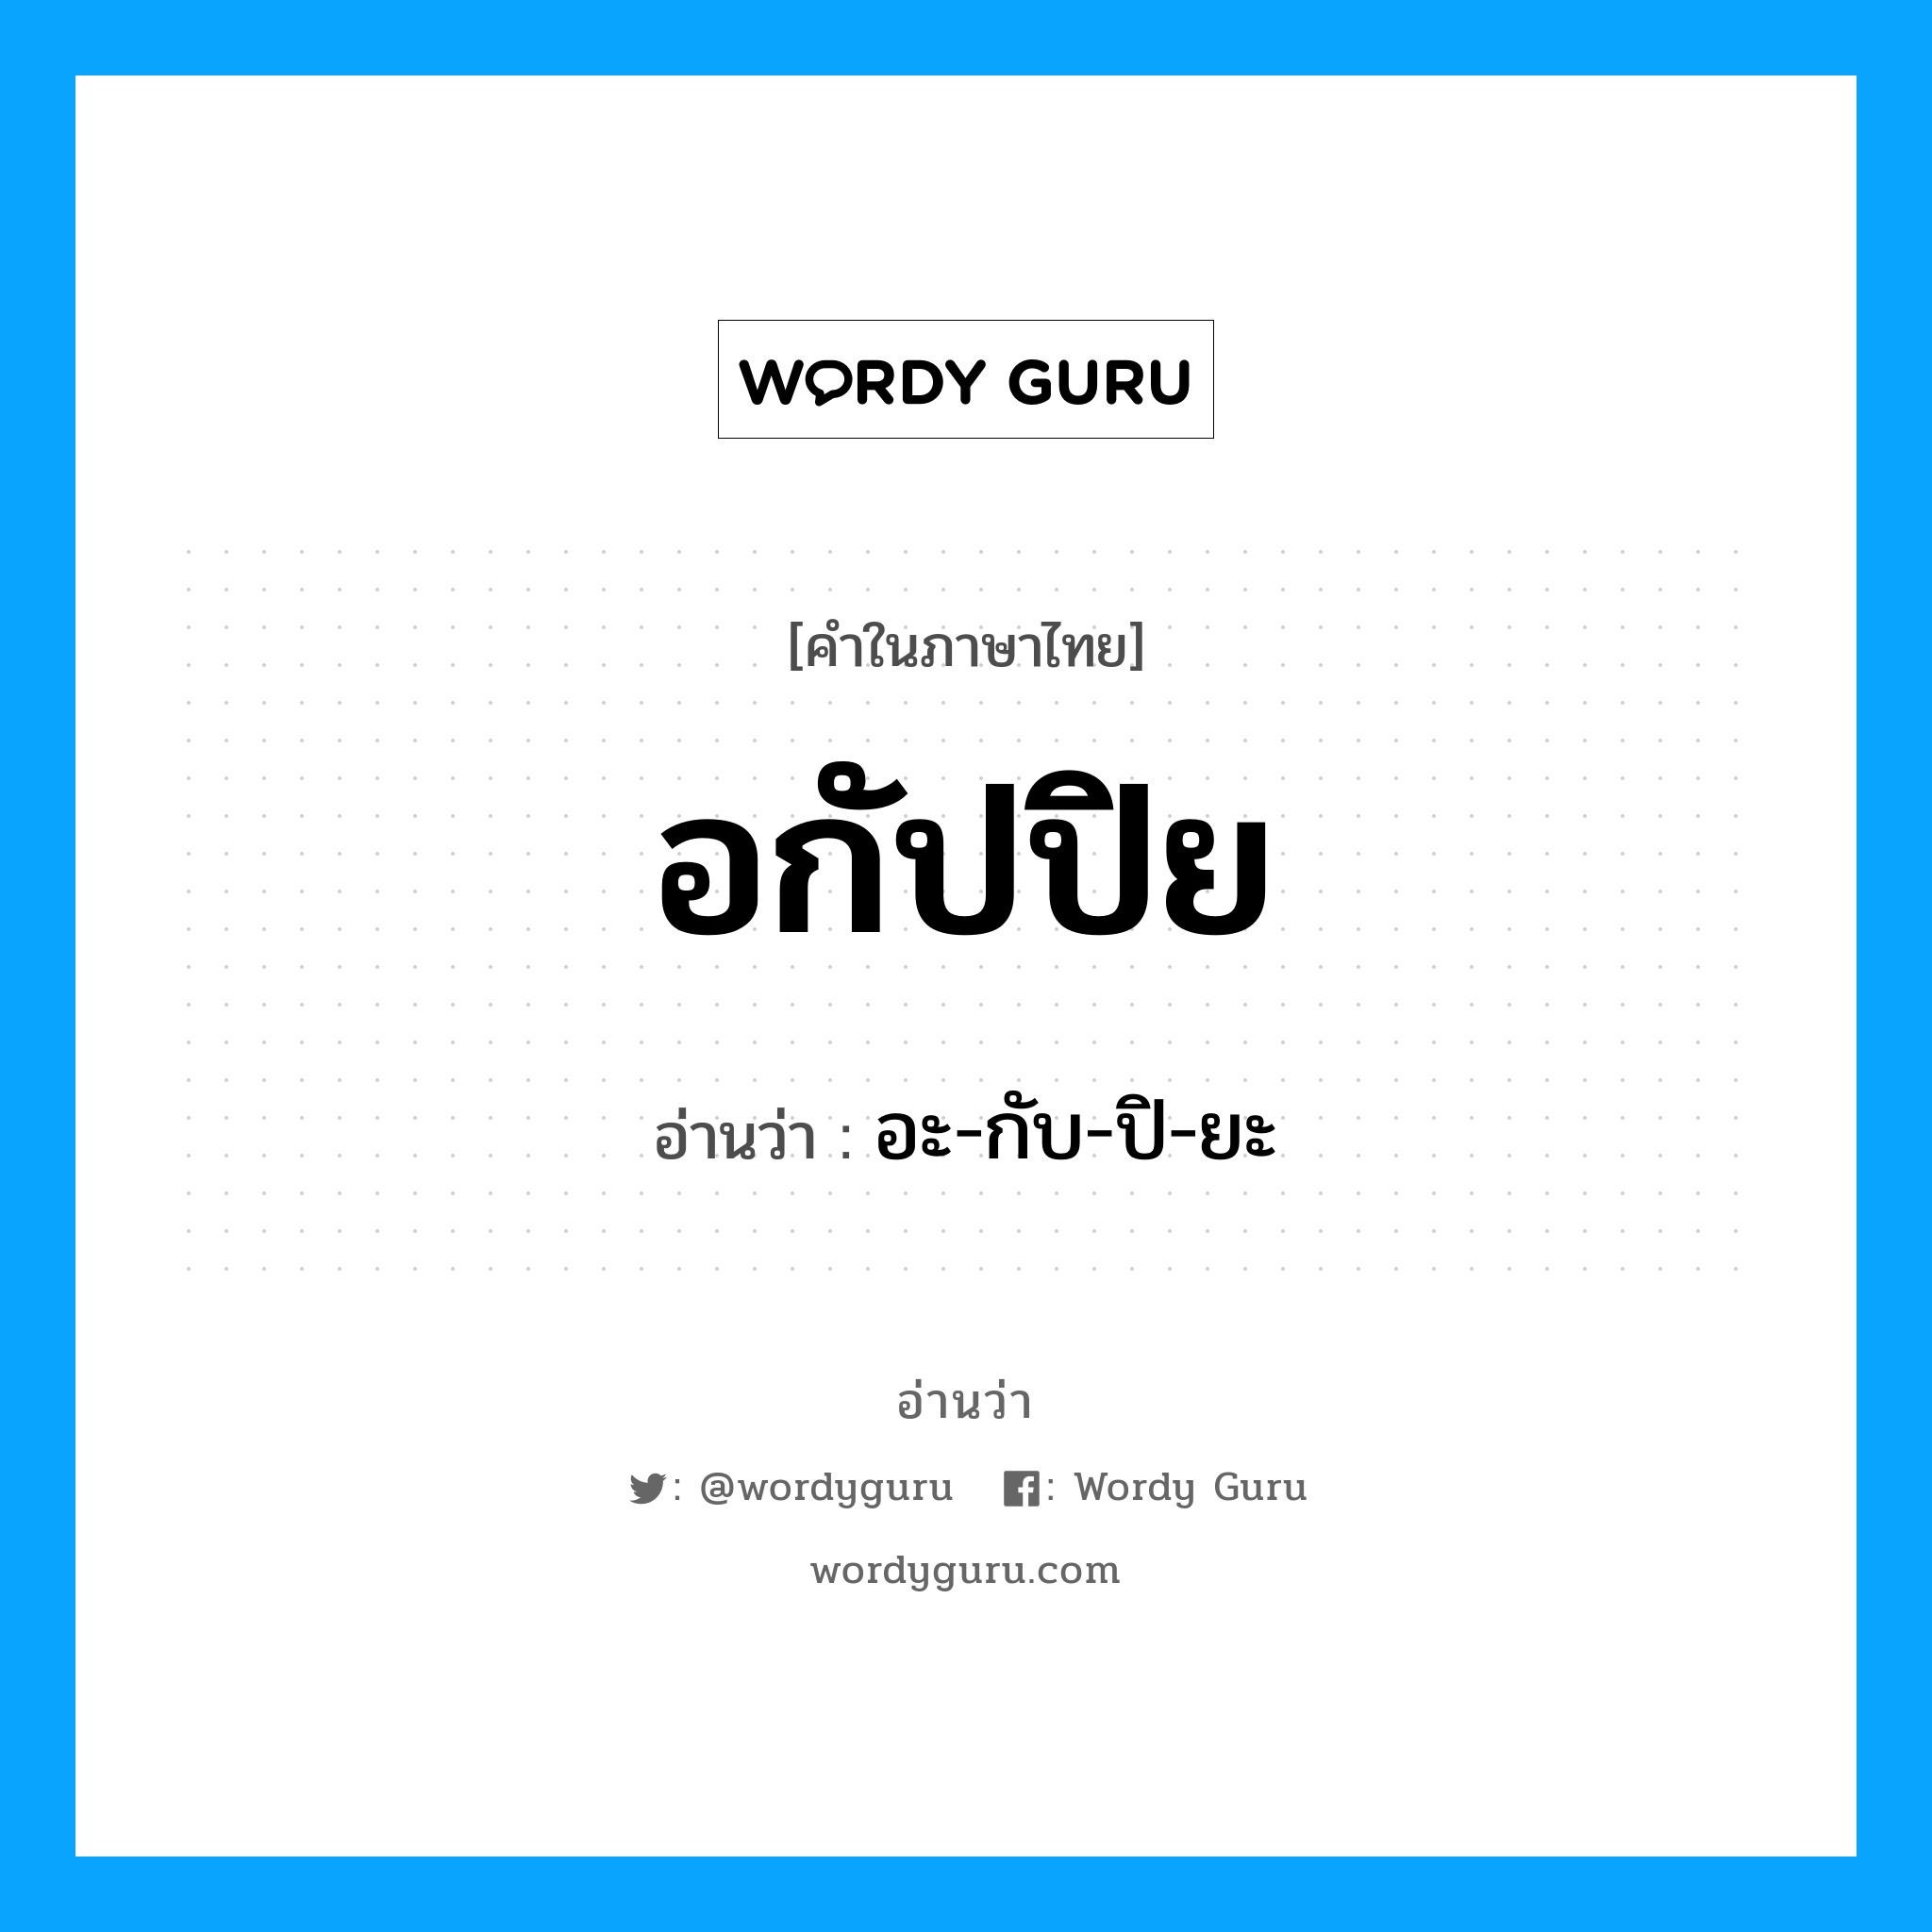 อะ-กับ-ปิ-ยะ เป็นคำอ่านของคำไหน?, คำในภาษาไทย อะ-กับ-ปิ-ยะ อ่านว่า อกัปปิย